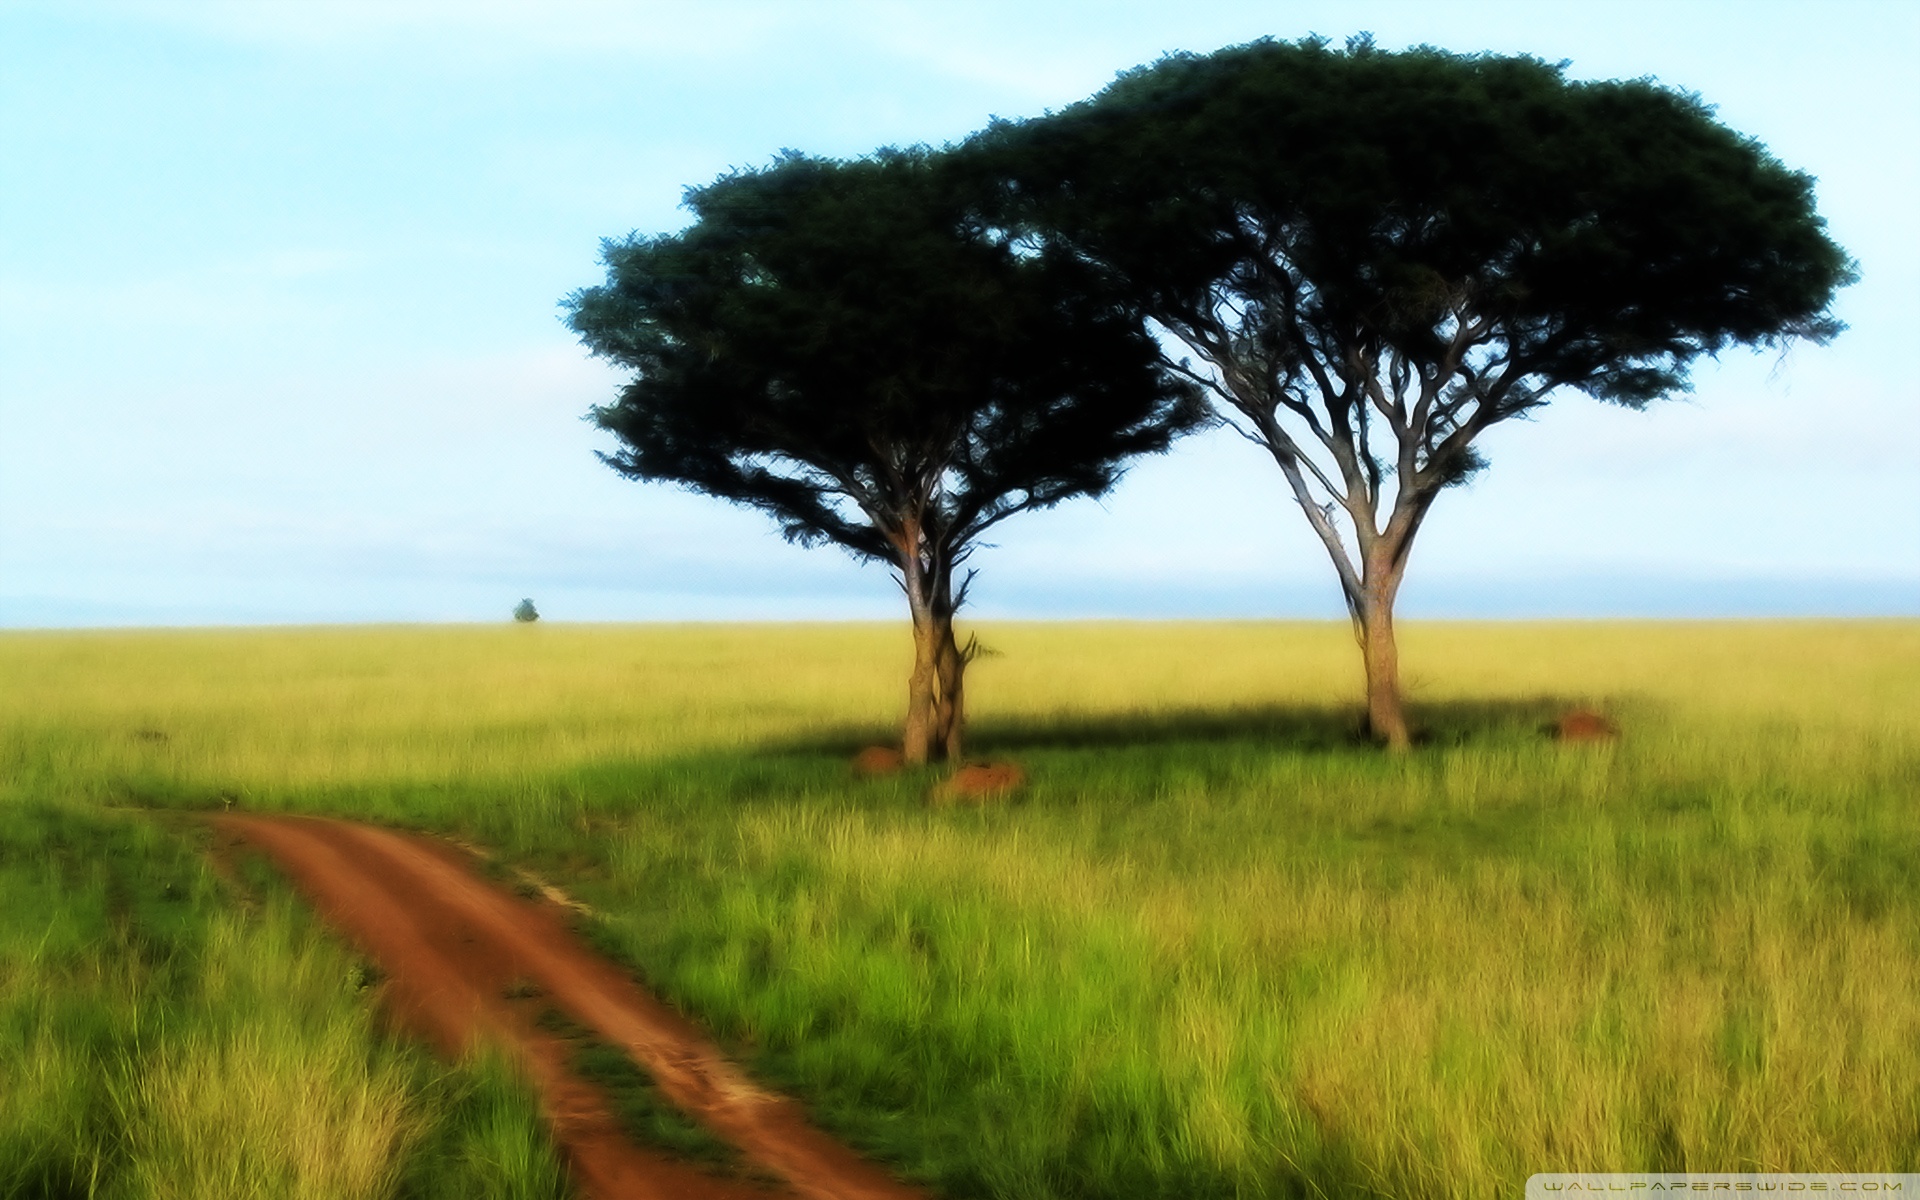 trees in savanna